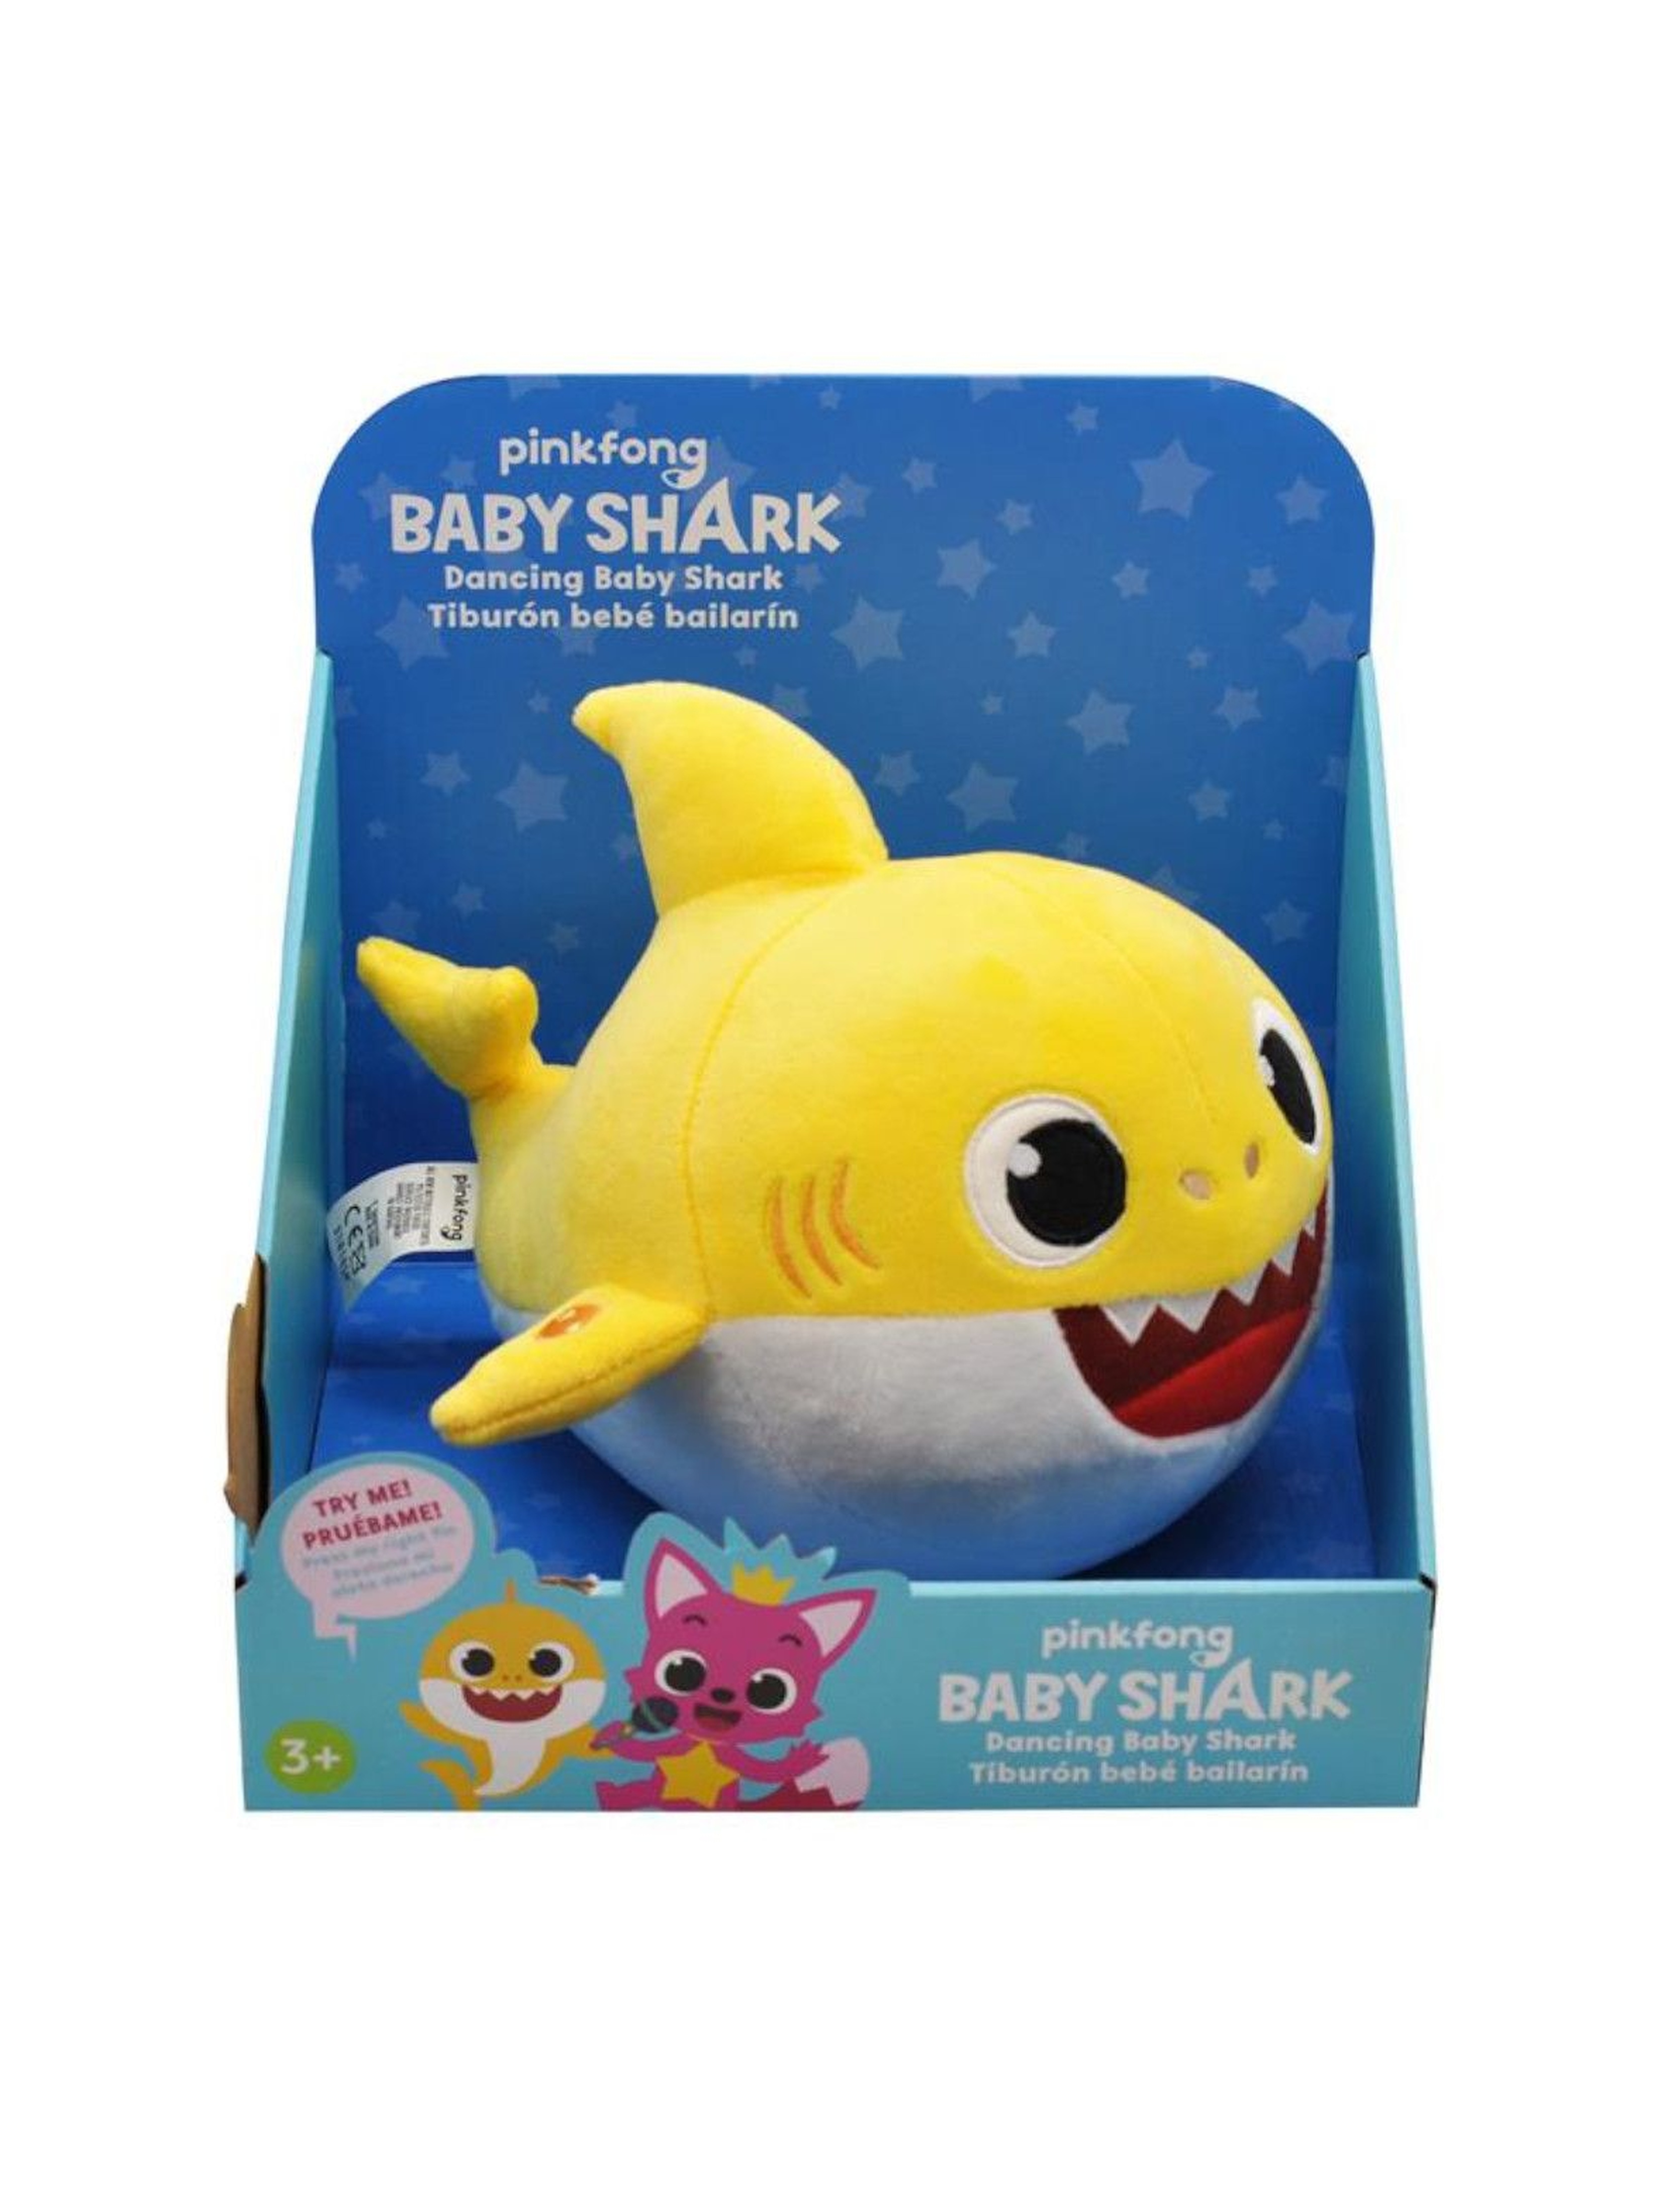 Baby Shark tańcząca maskotka wiek 3+